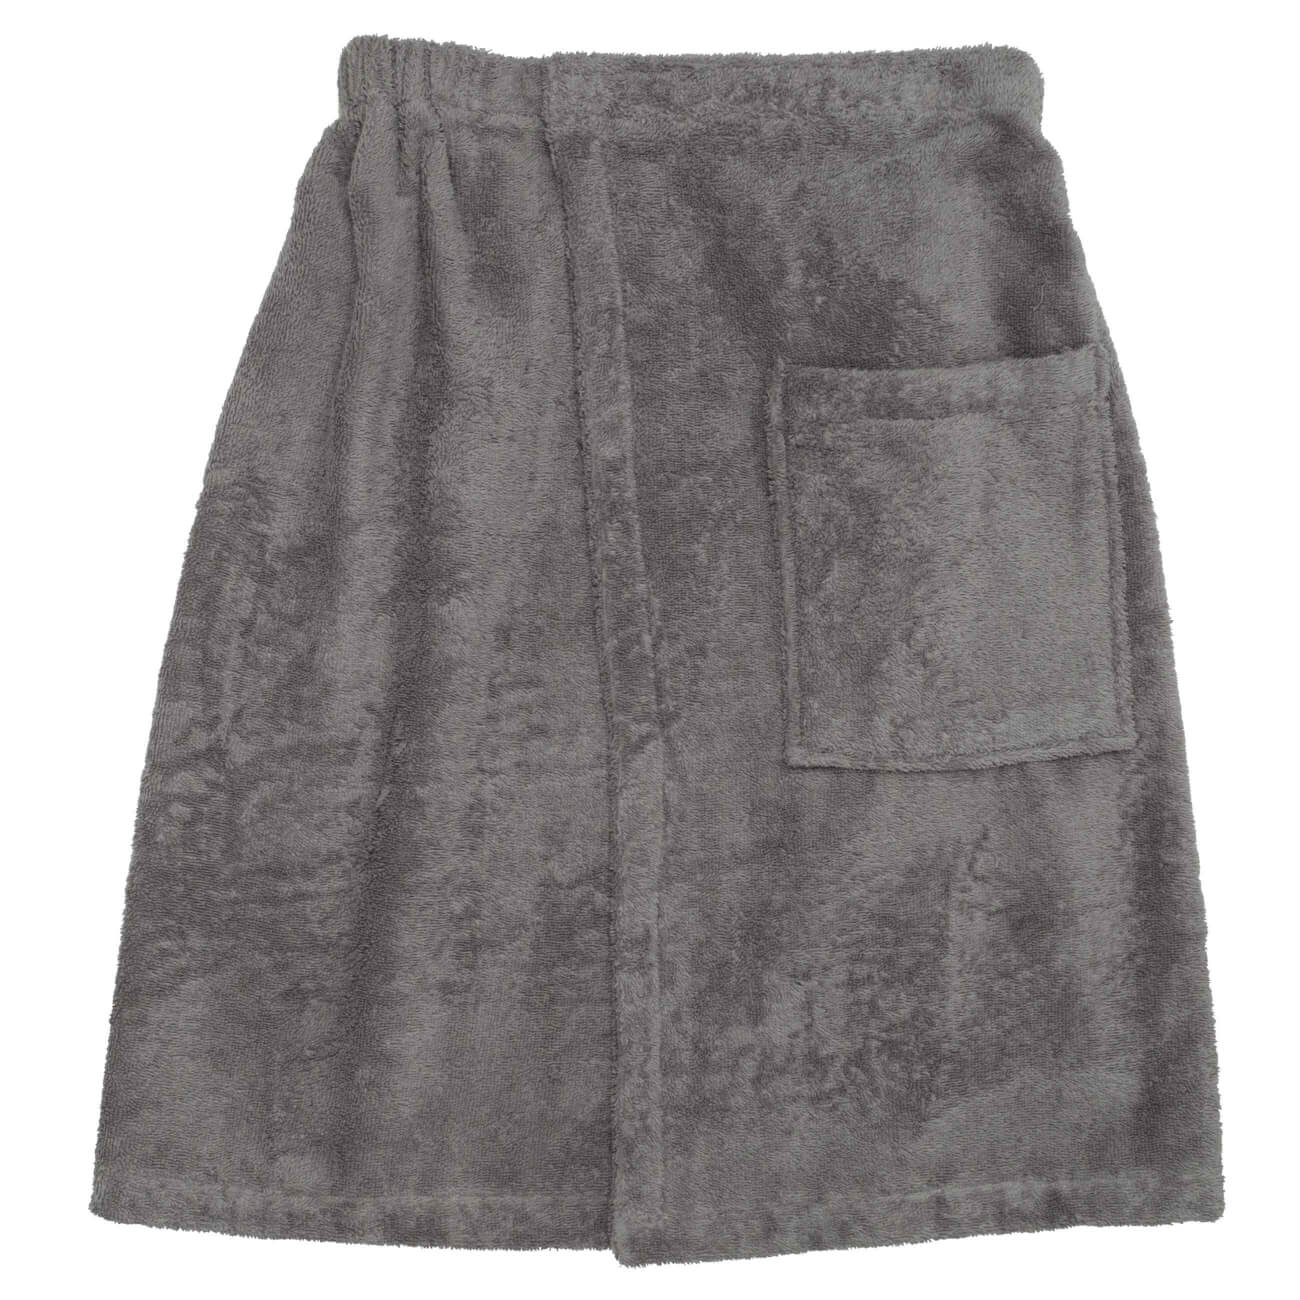 Полотенце-килт мужское, 70х160 см, на липучке, хлопок, темно-серое, Spa towel изображение № 1